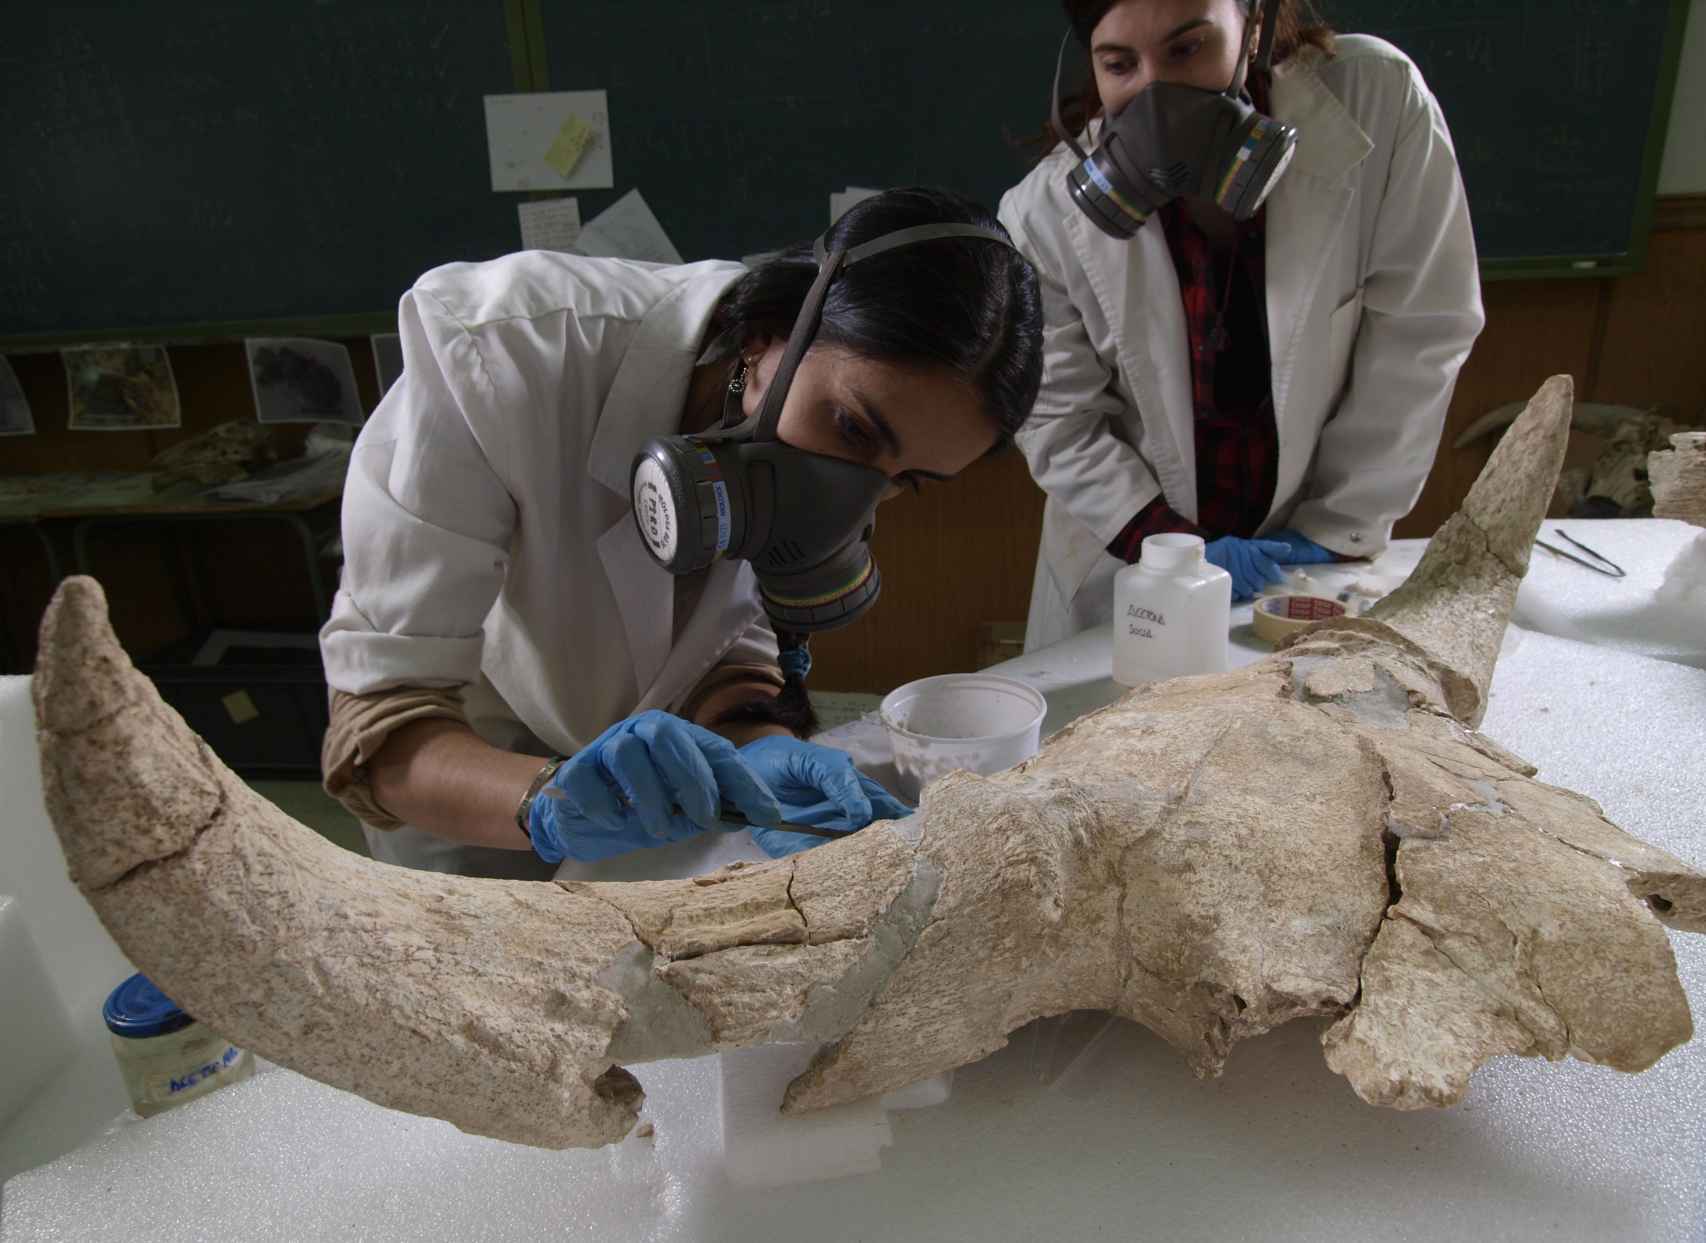 Momento en el laboratorio de restauración de uno de los cráneos de Cueva-Des-Cubierta.